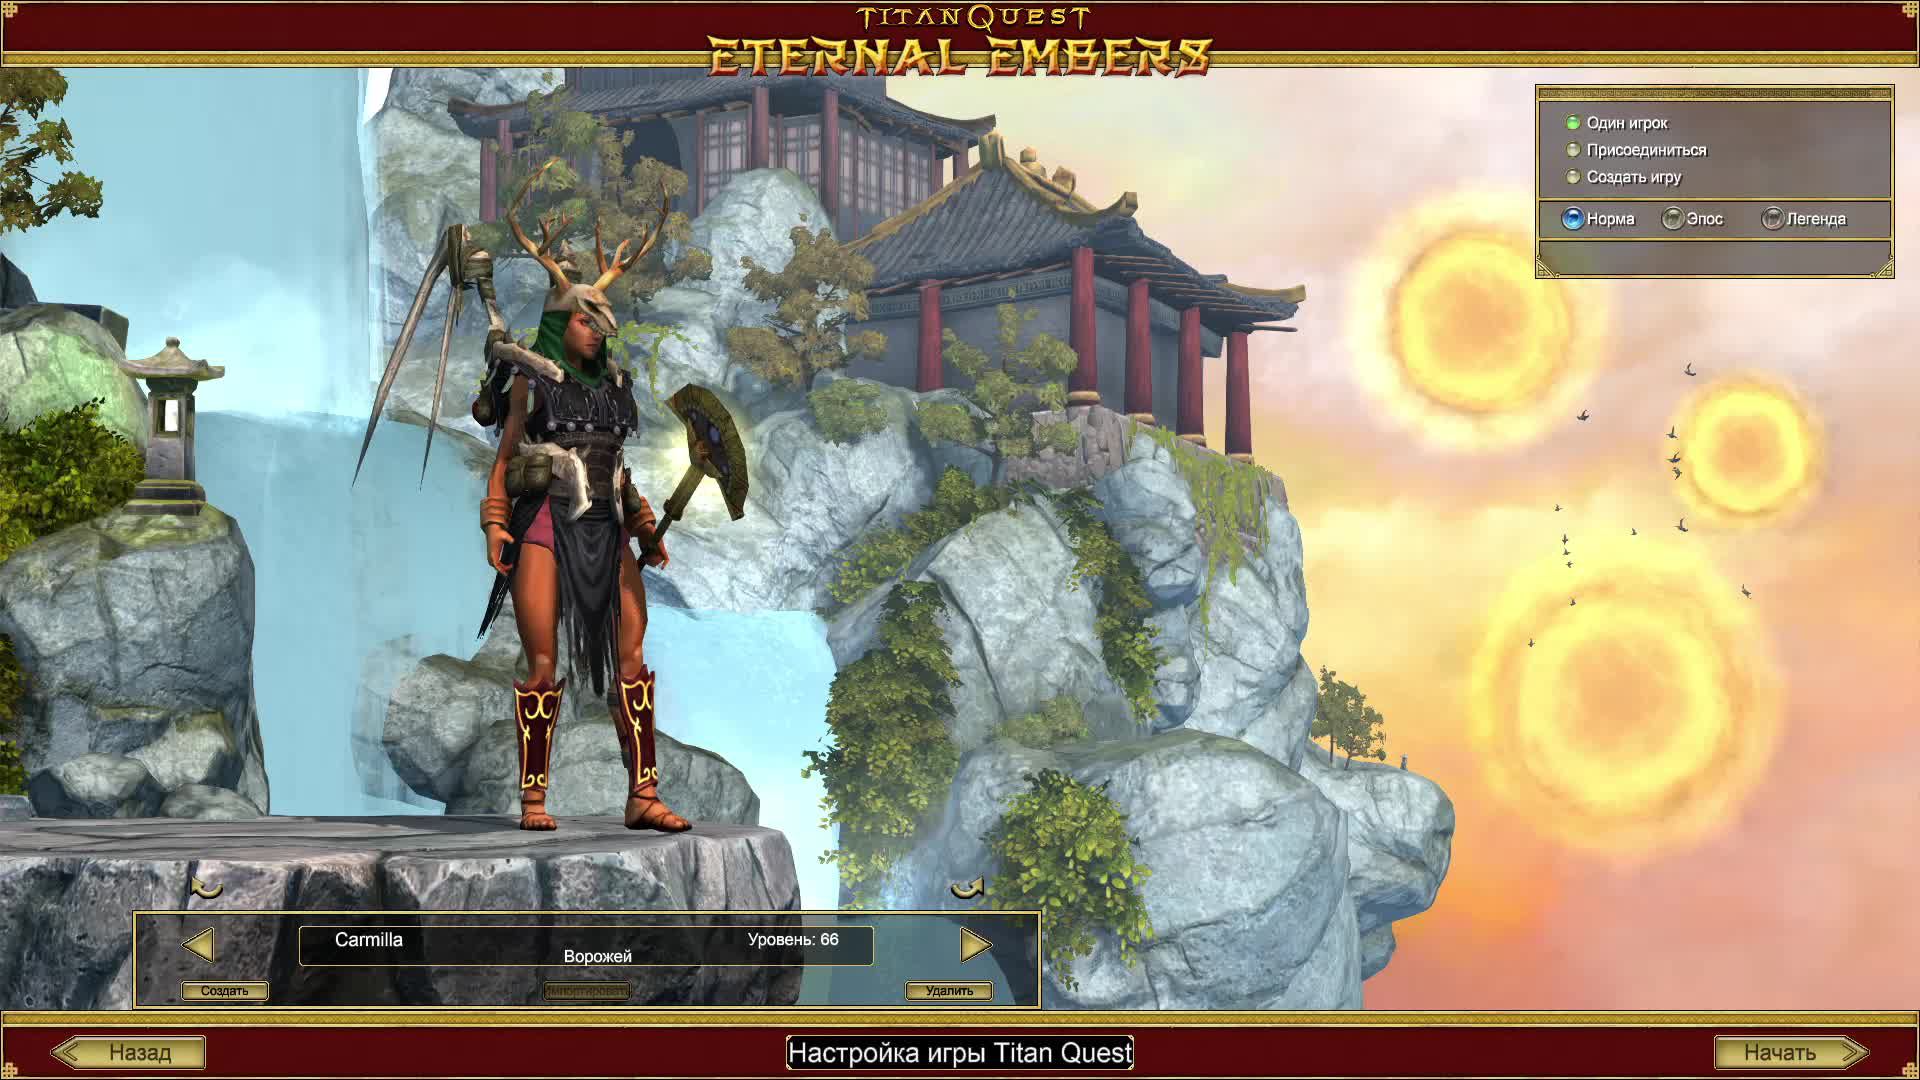 Titan Quest Anniversary Edition, Прохождение за Ворожейку, уровень сложности Легенда #3